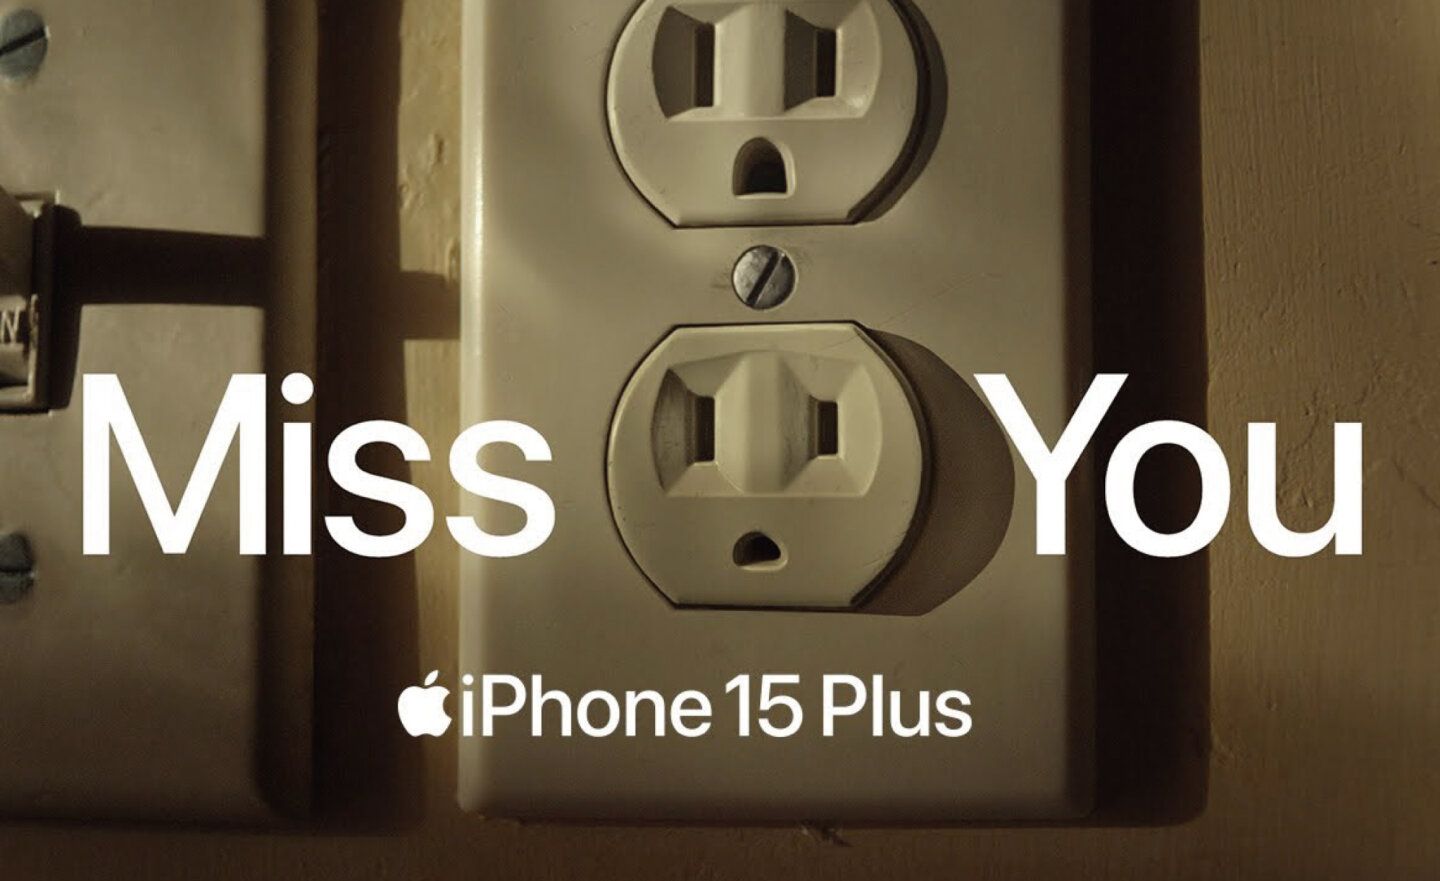 蘋果分享 iPhone 15 Plus 廣告，強調超長電池續航力